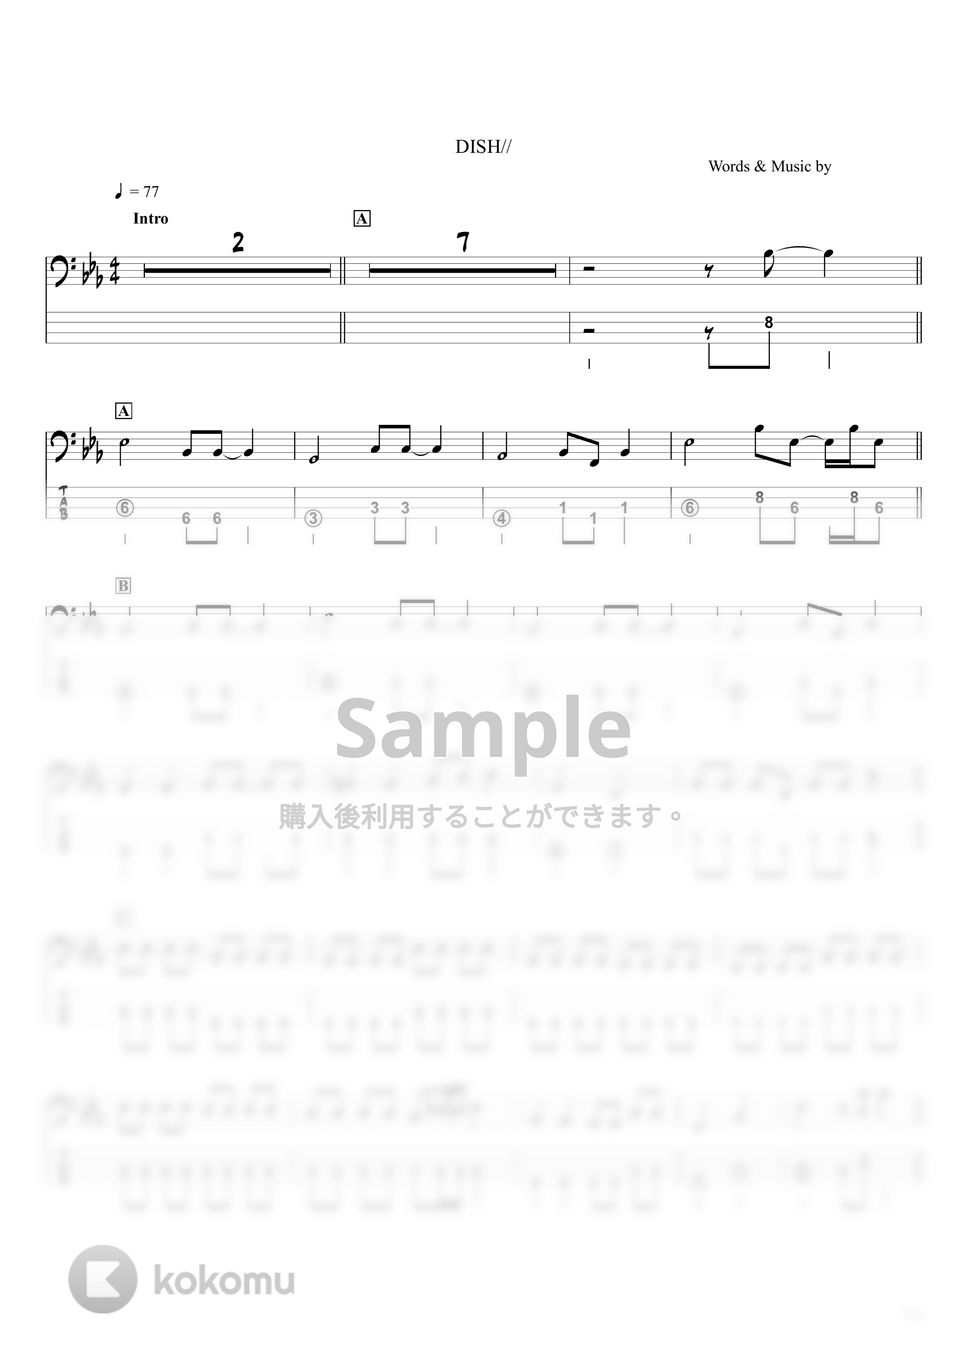 DISH// - 【猫】DISH//『ベースTAB譜』☆4弦ベース対応 by swbass